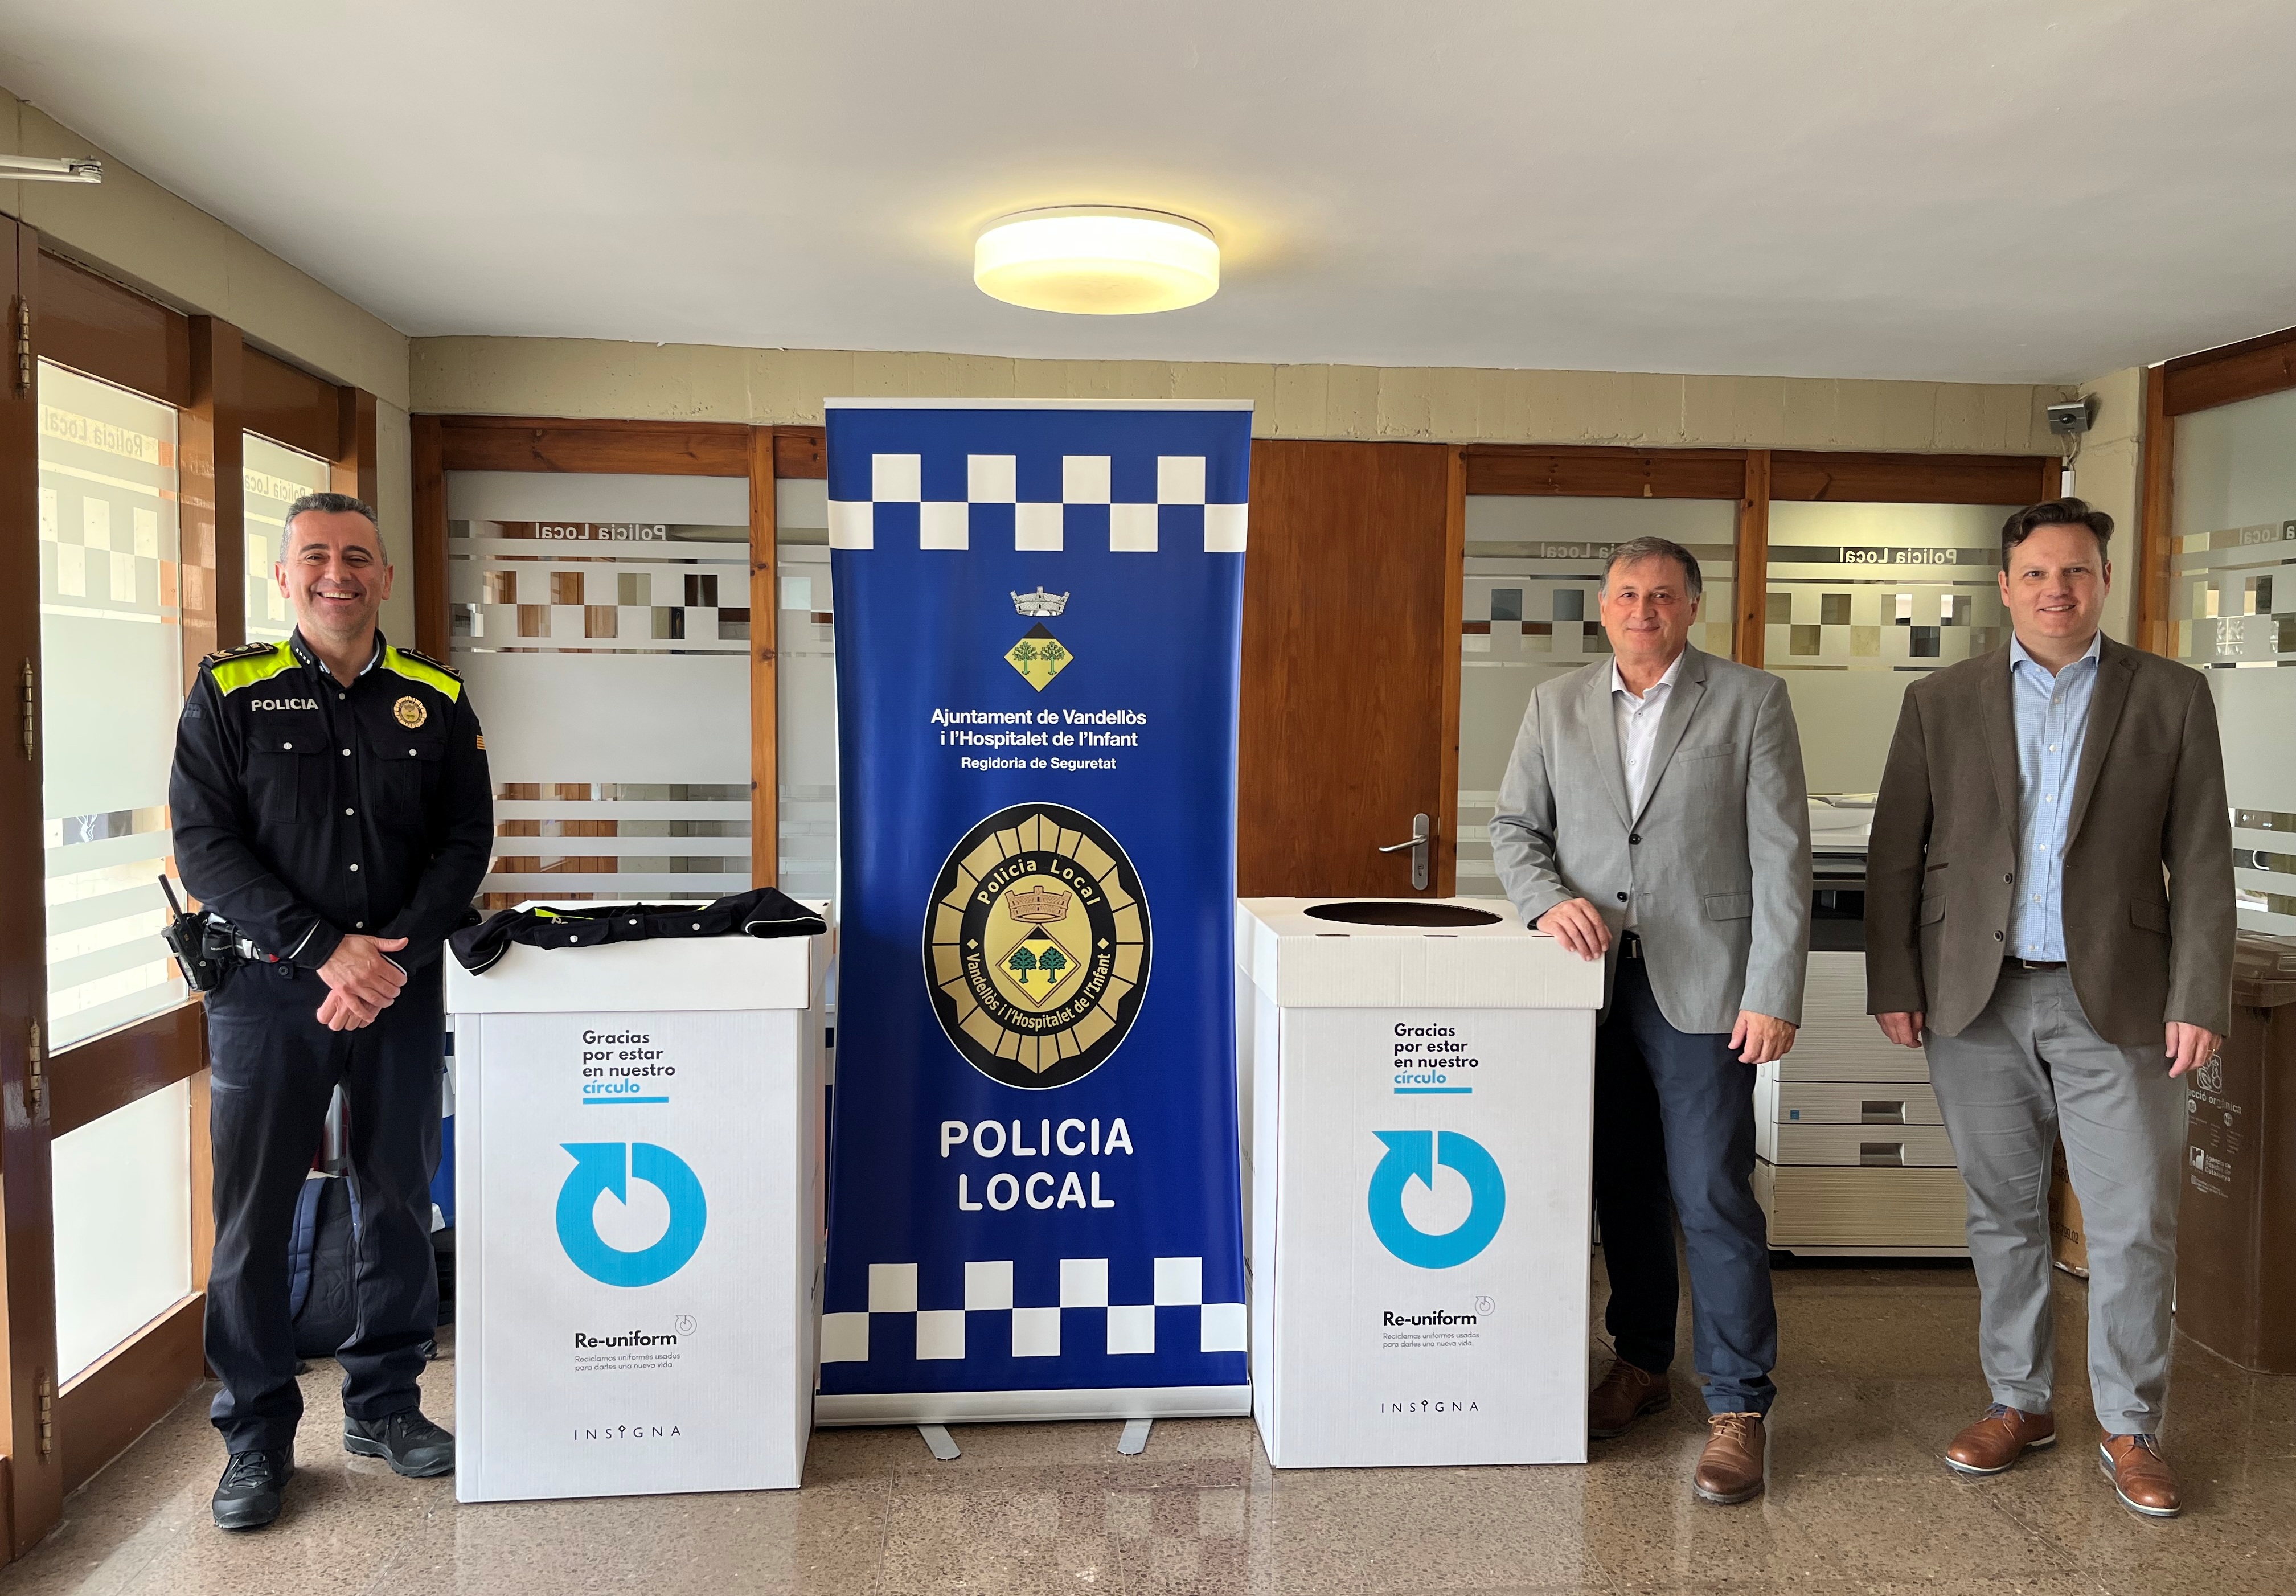 La Policia Local de Vandellòs i l’Hospitalet de l’Infant s’adhereix al programa Re-uniform de reciclatge d’uniformes